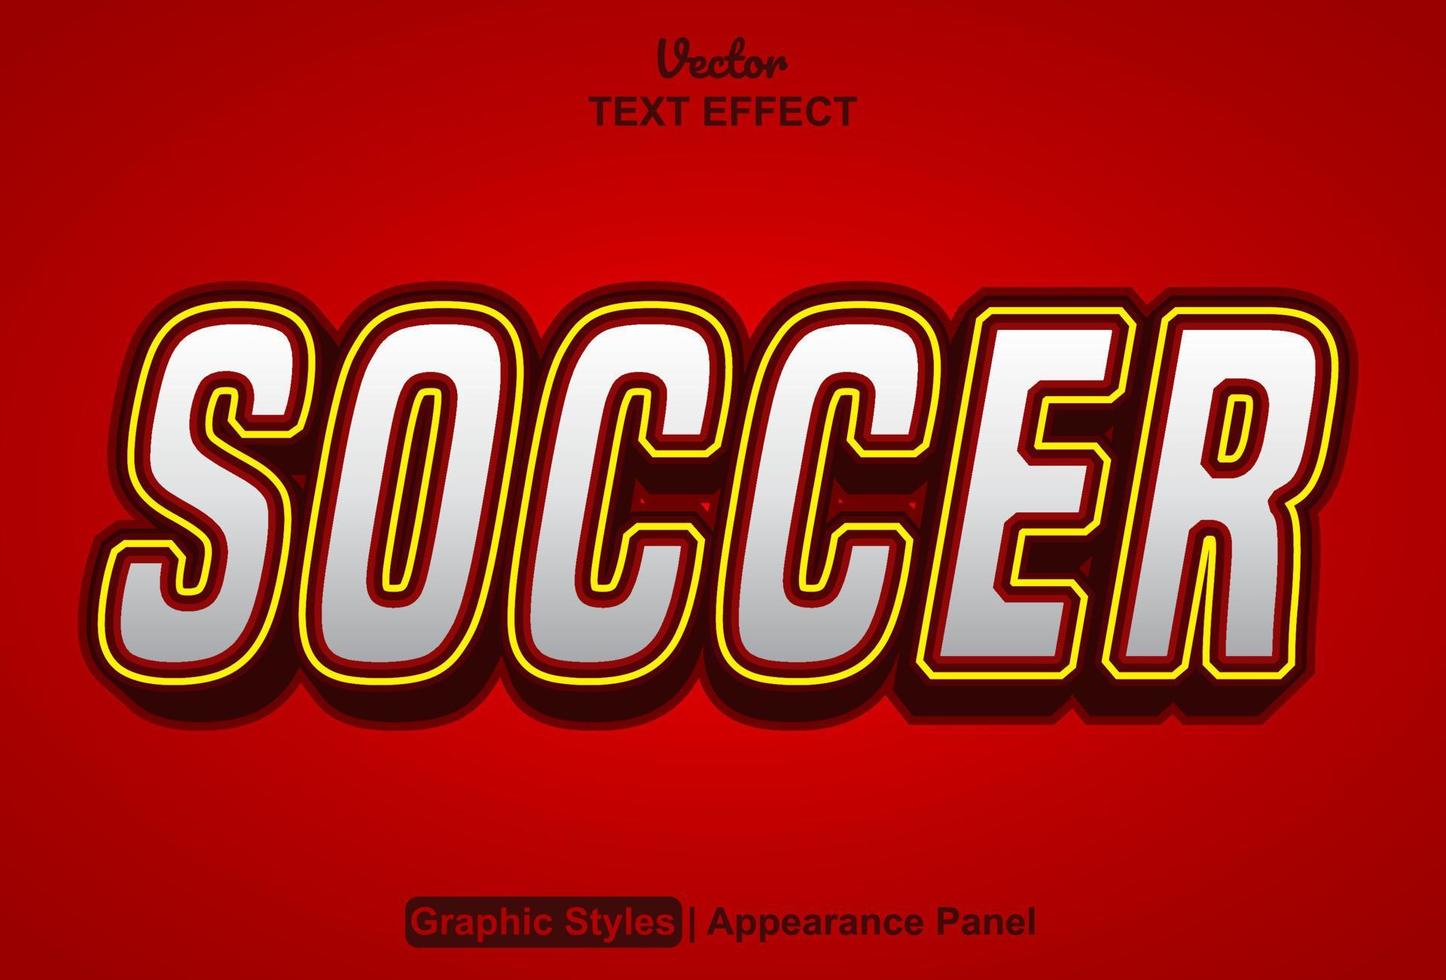 Fußballtexteffekt mit Grafikstil und bearbeitbar. vektor